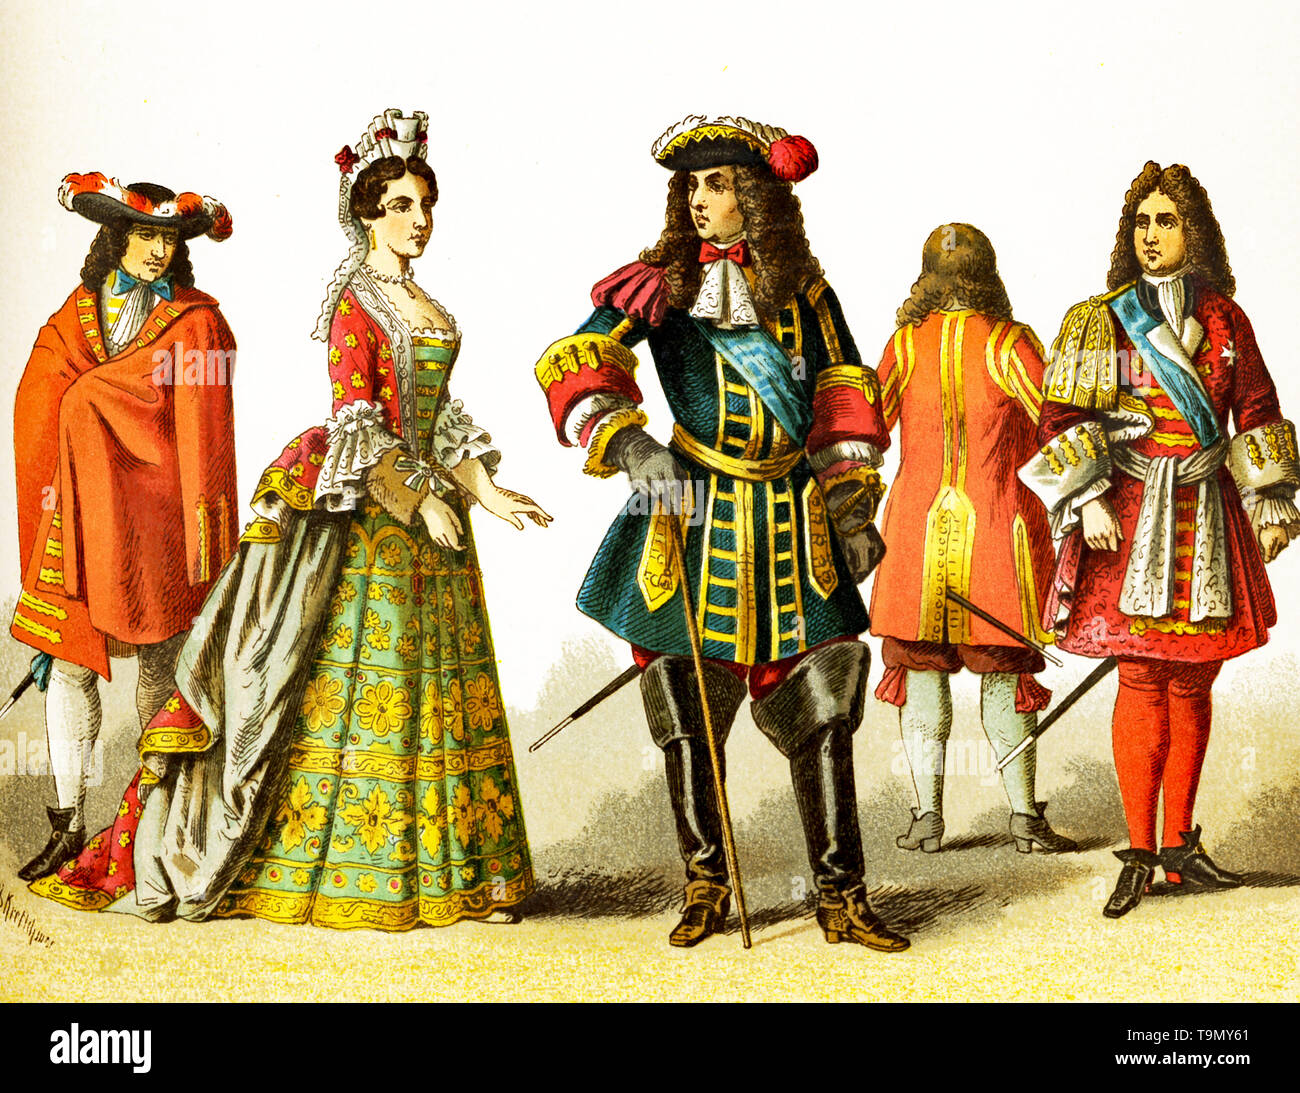 Le figure qui rappresentate sono il popolo francese intorno al 1600. Essi sono, da sinistra a destra: cortigiano, signora di rango, Luigi XIV nel 1680, cortigiano, cortigiano. L'illustrazione risale al 1882. Foto Stock